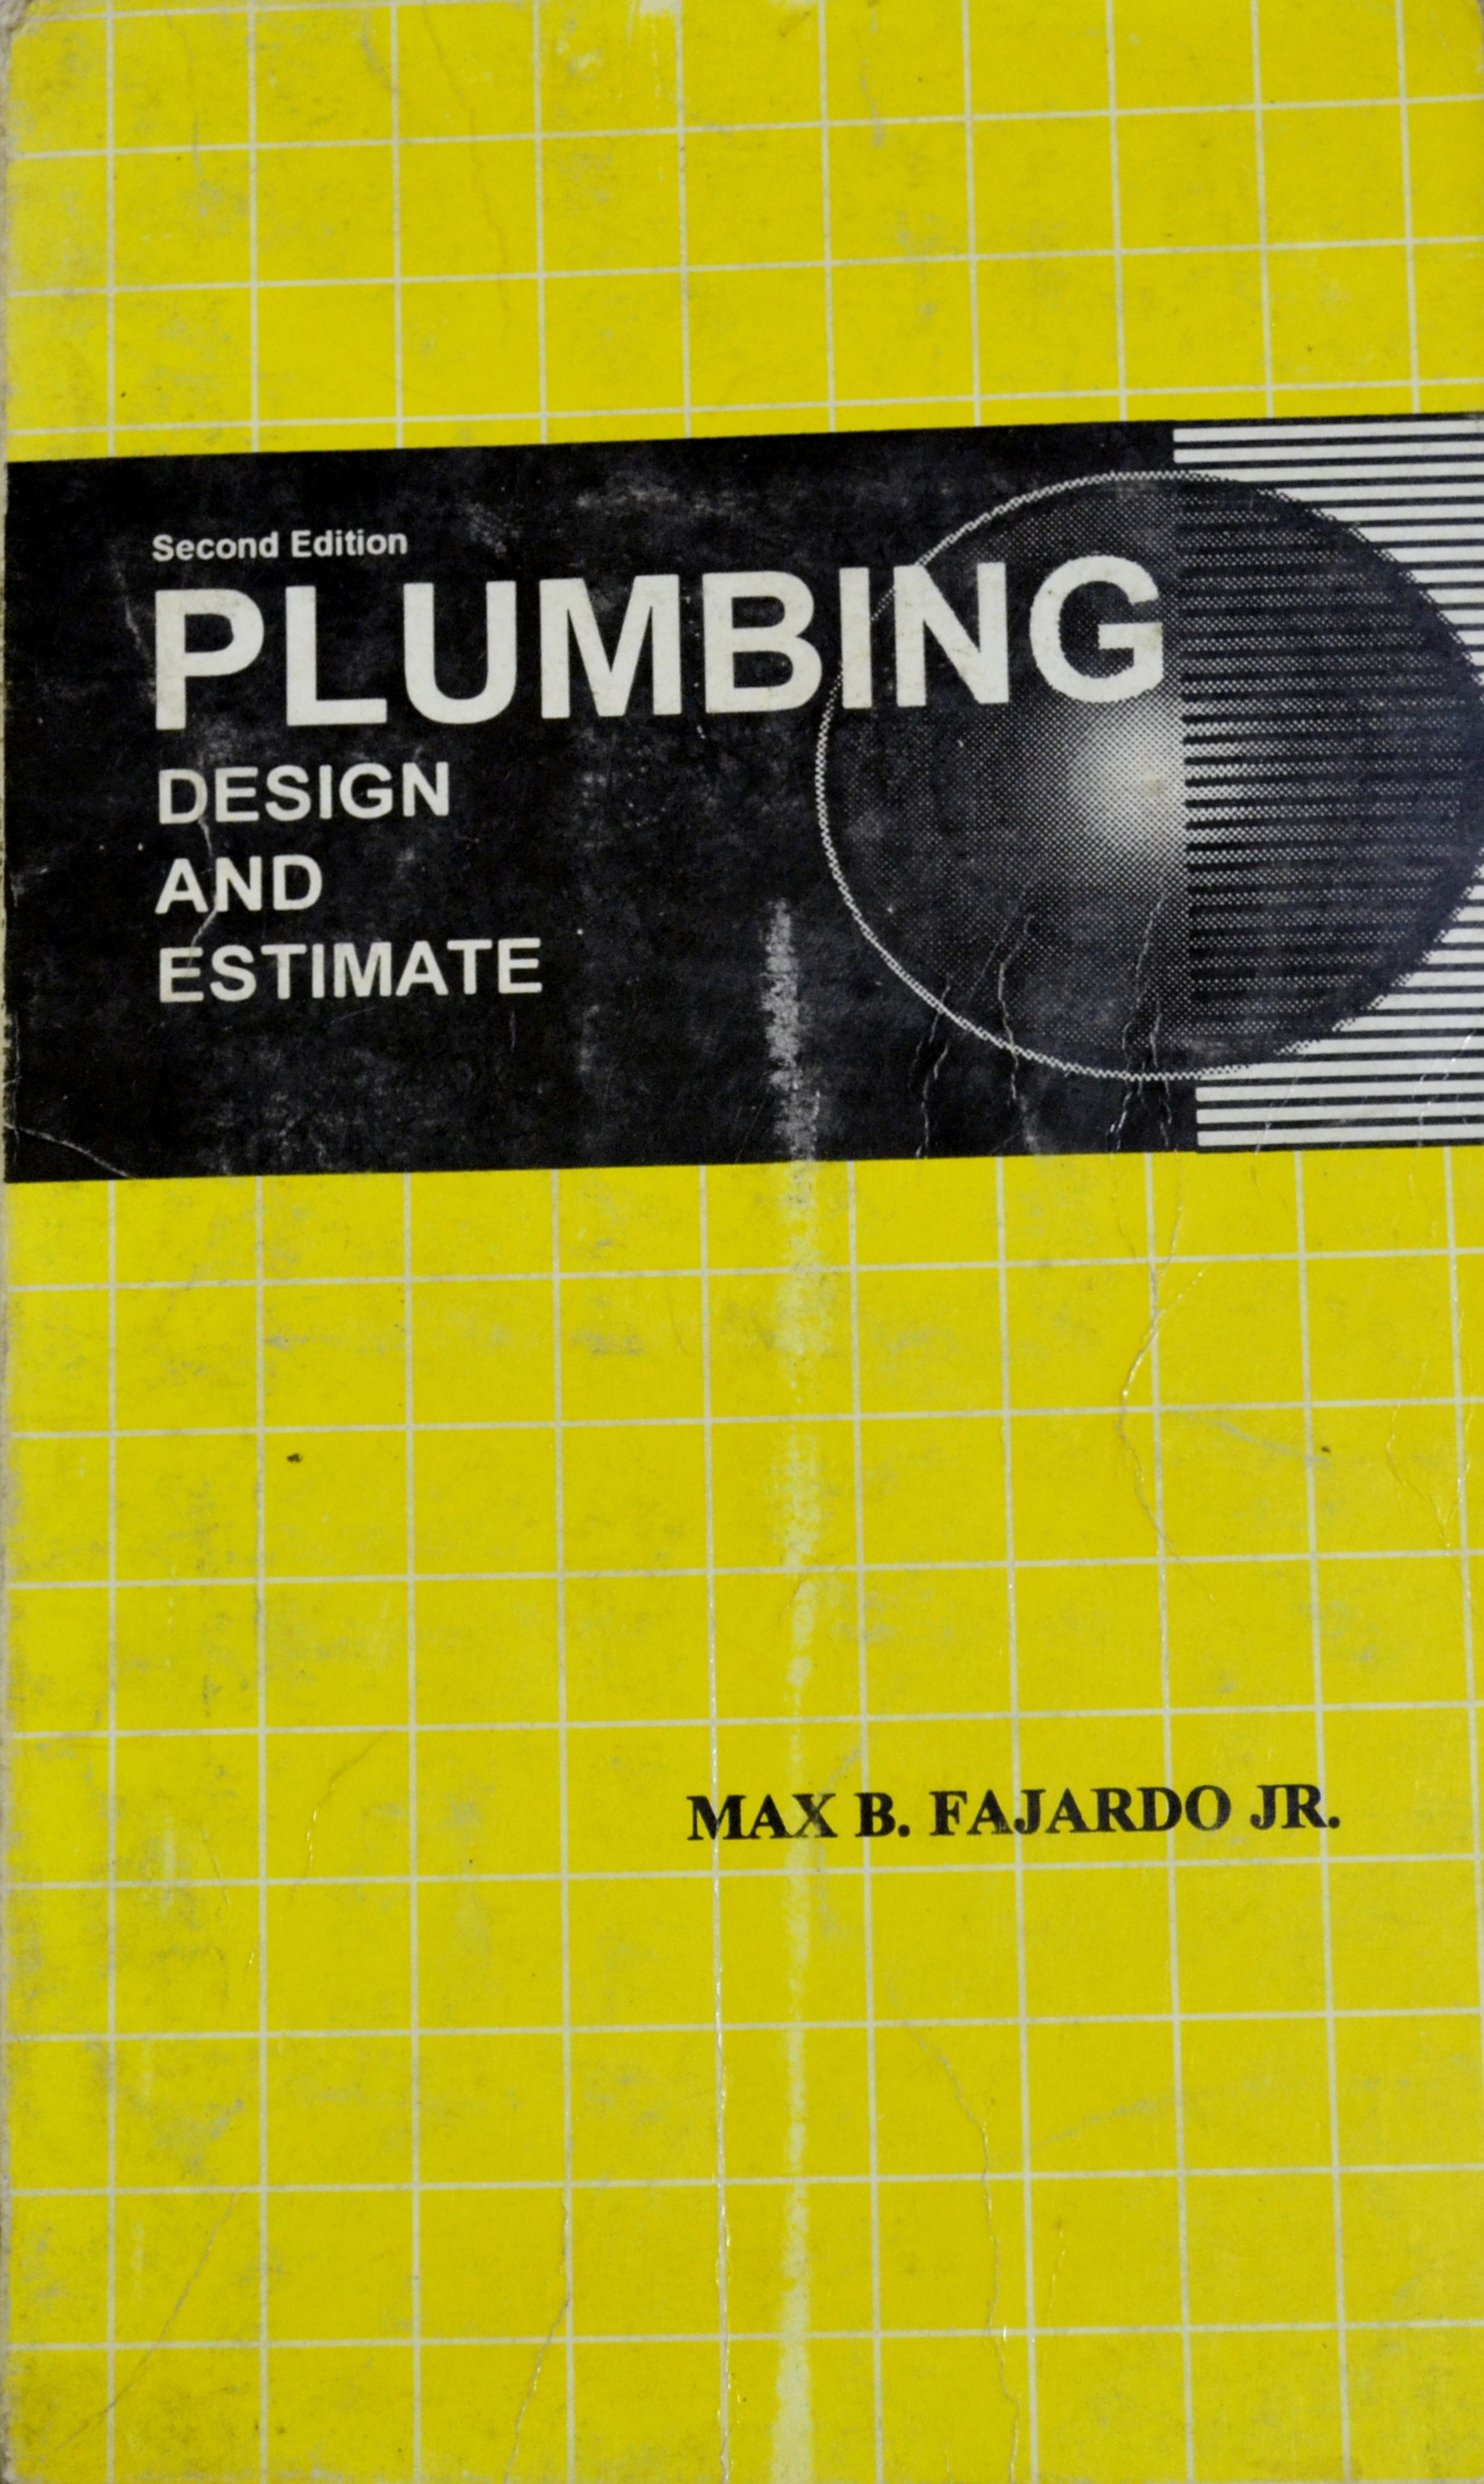 plumbing design and estimate by max b fajardo jr pdf download